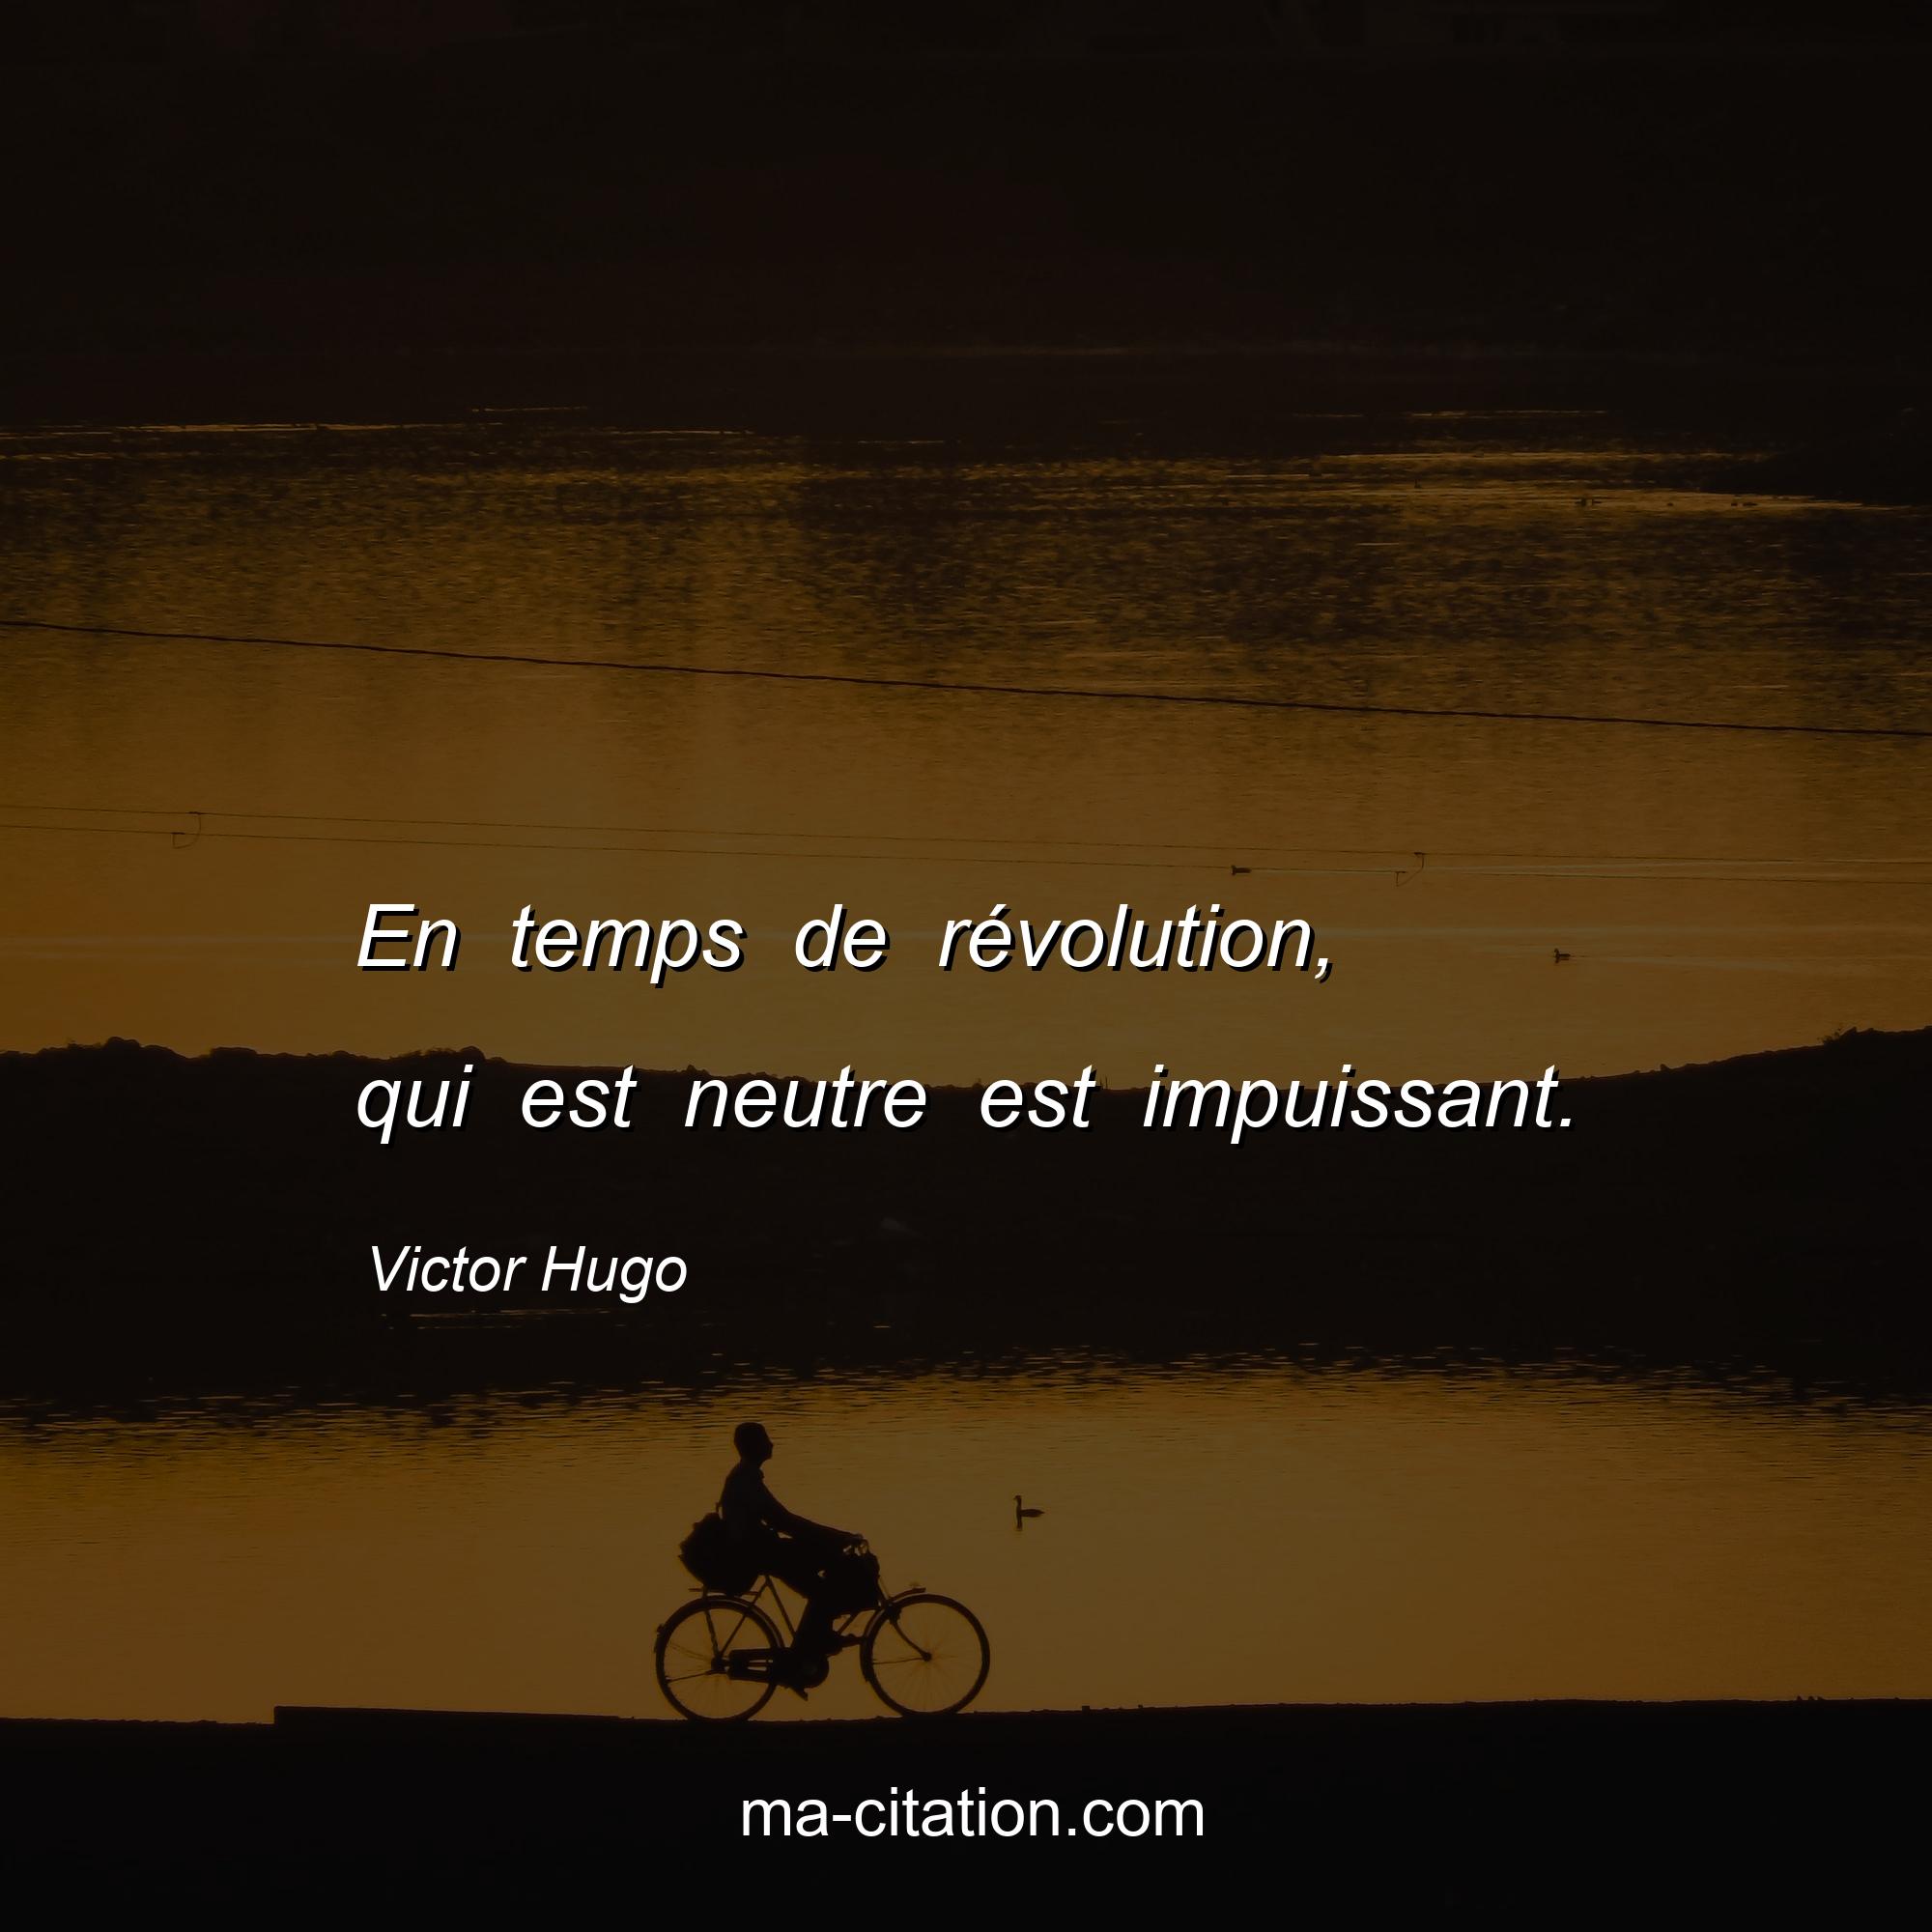 Victor Hugo : En temps de révolution, qui est neutre est impuissant.